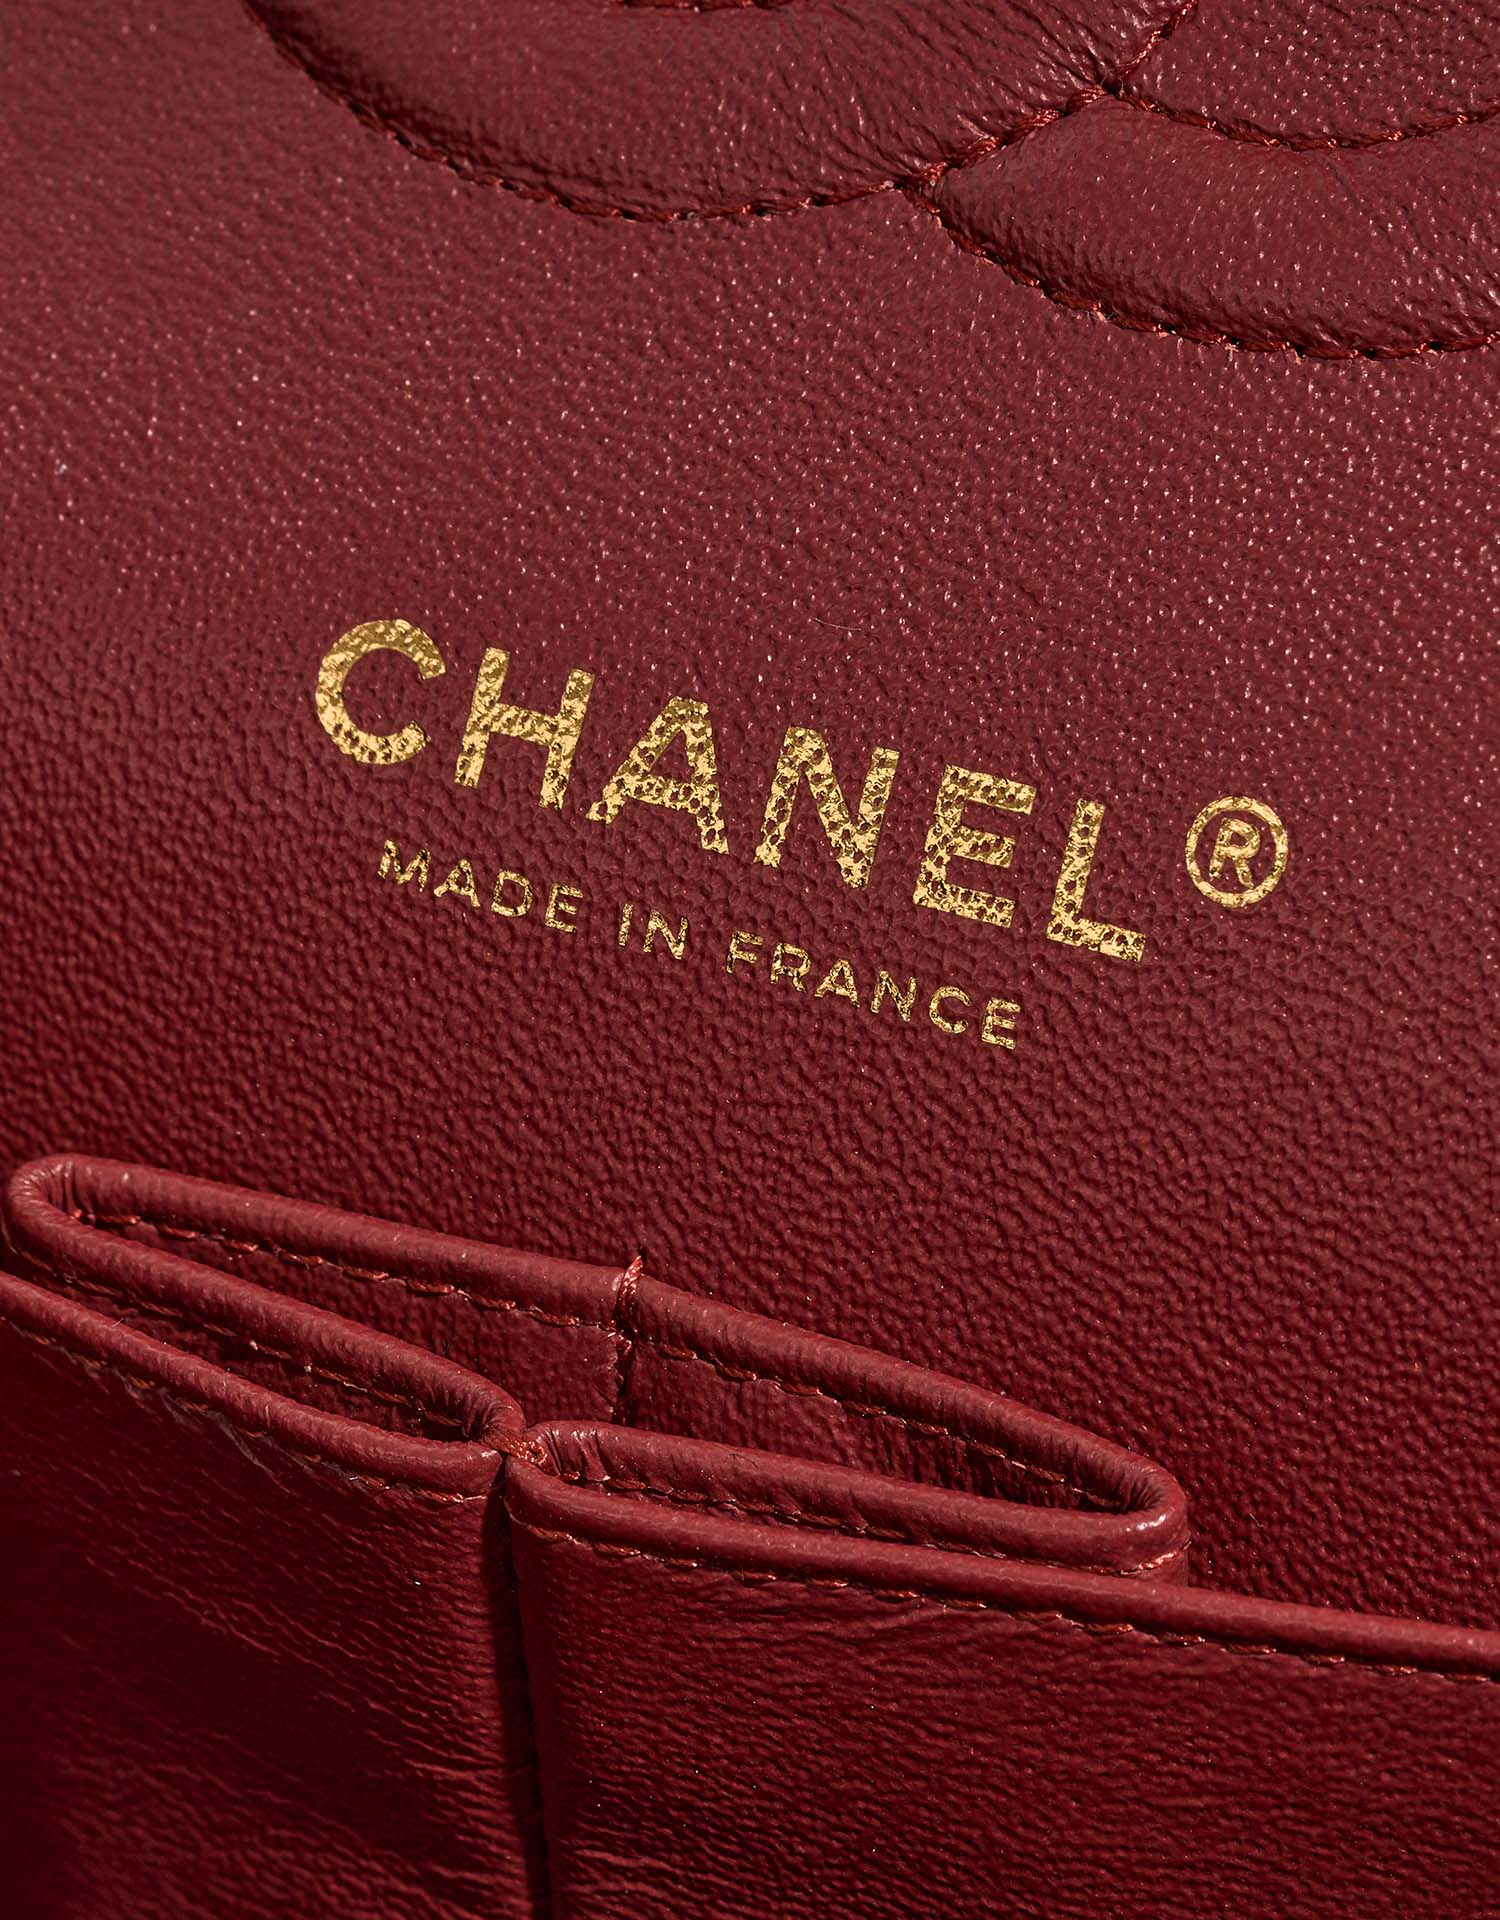 Gebrauchte Chanel Tasche Timeless Medium Caviar-Leder Rot Rot | Verkaufen Sie Ihre Designer-Tasche auf Saclab.com